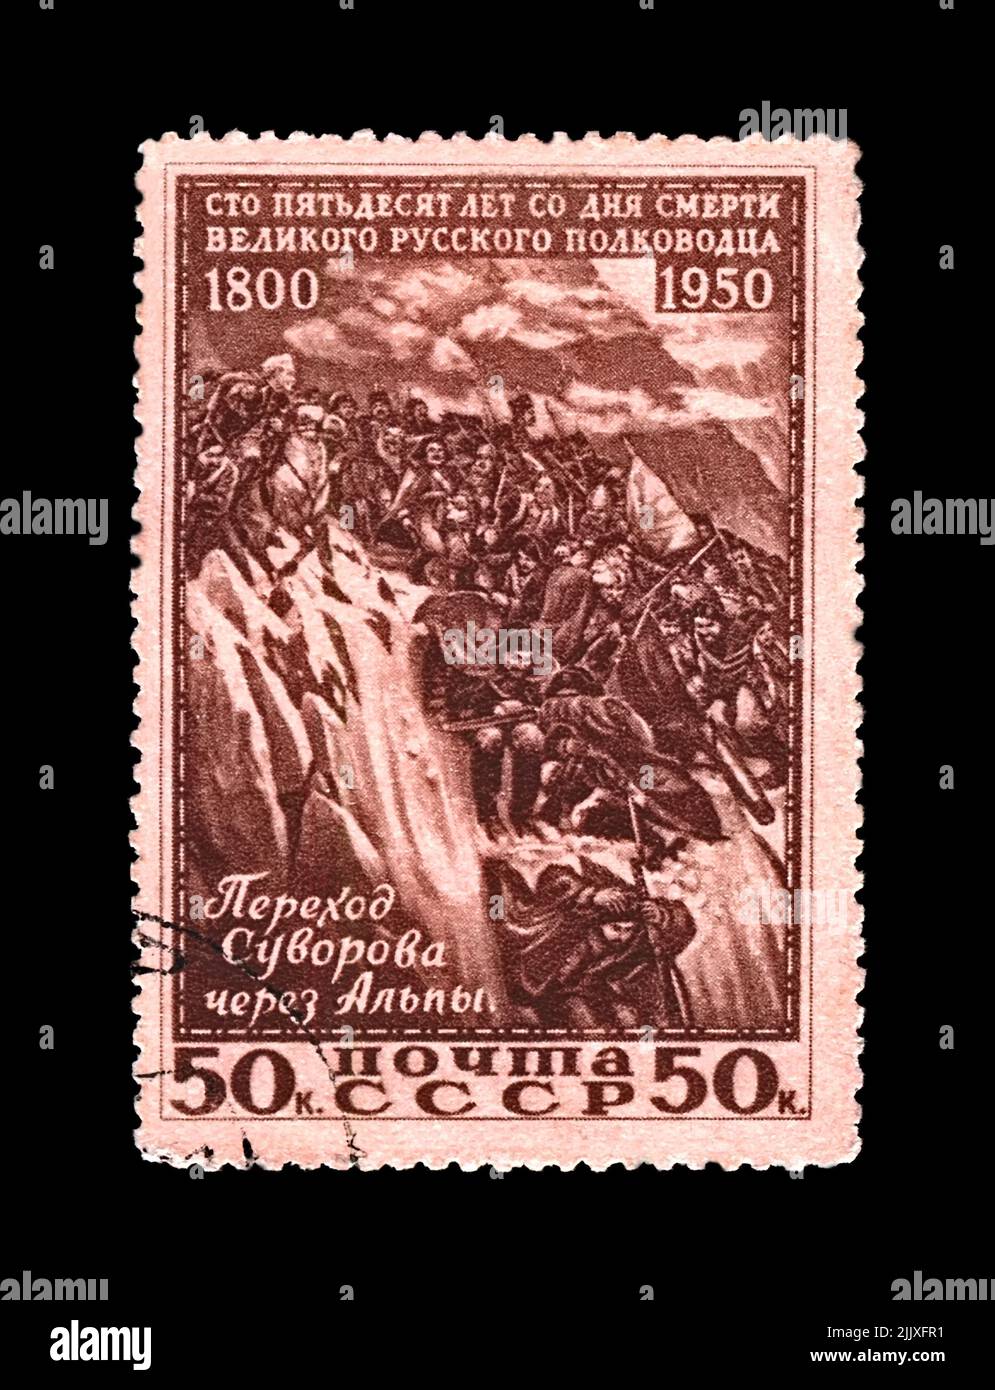 Alexander Suvorov (1730-1800) e i soldati che attraversano la montagna delle Alpi, famoso comandante militare russo, maresciallo, circa 1950. Cancellato timbro postale p Foto Stock